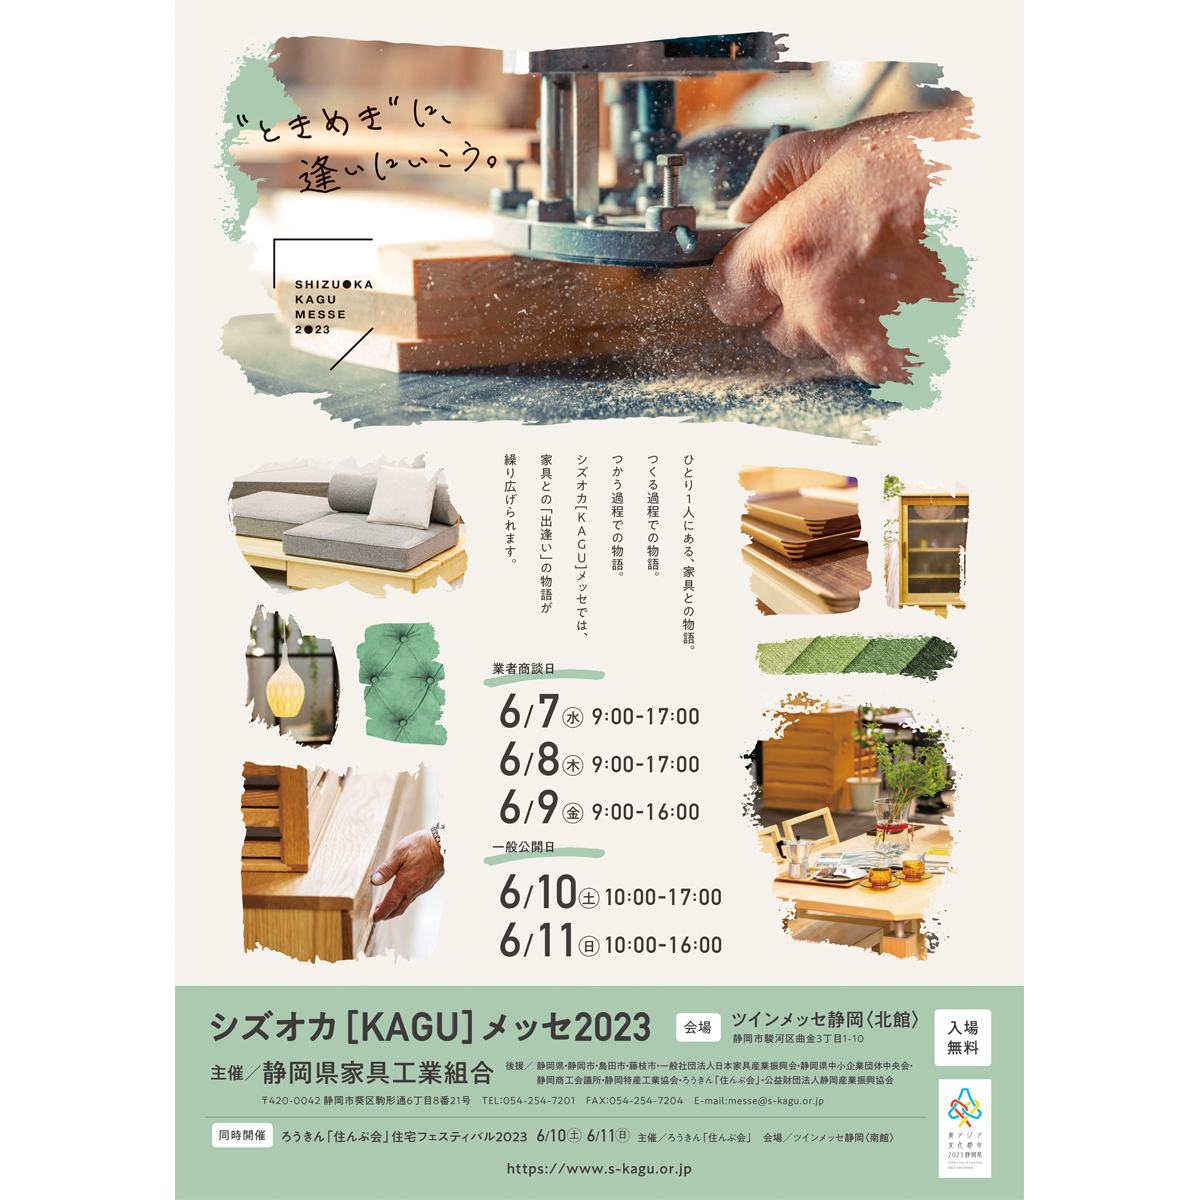 静岡家具メッセに、天然大理石家具「URBANOシリーズ」が展示されます。